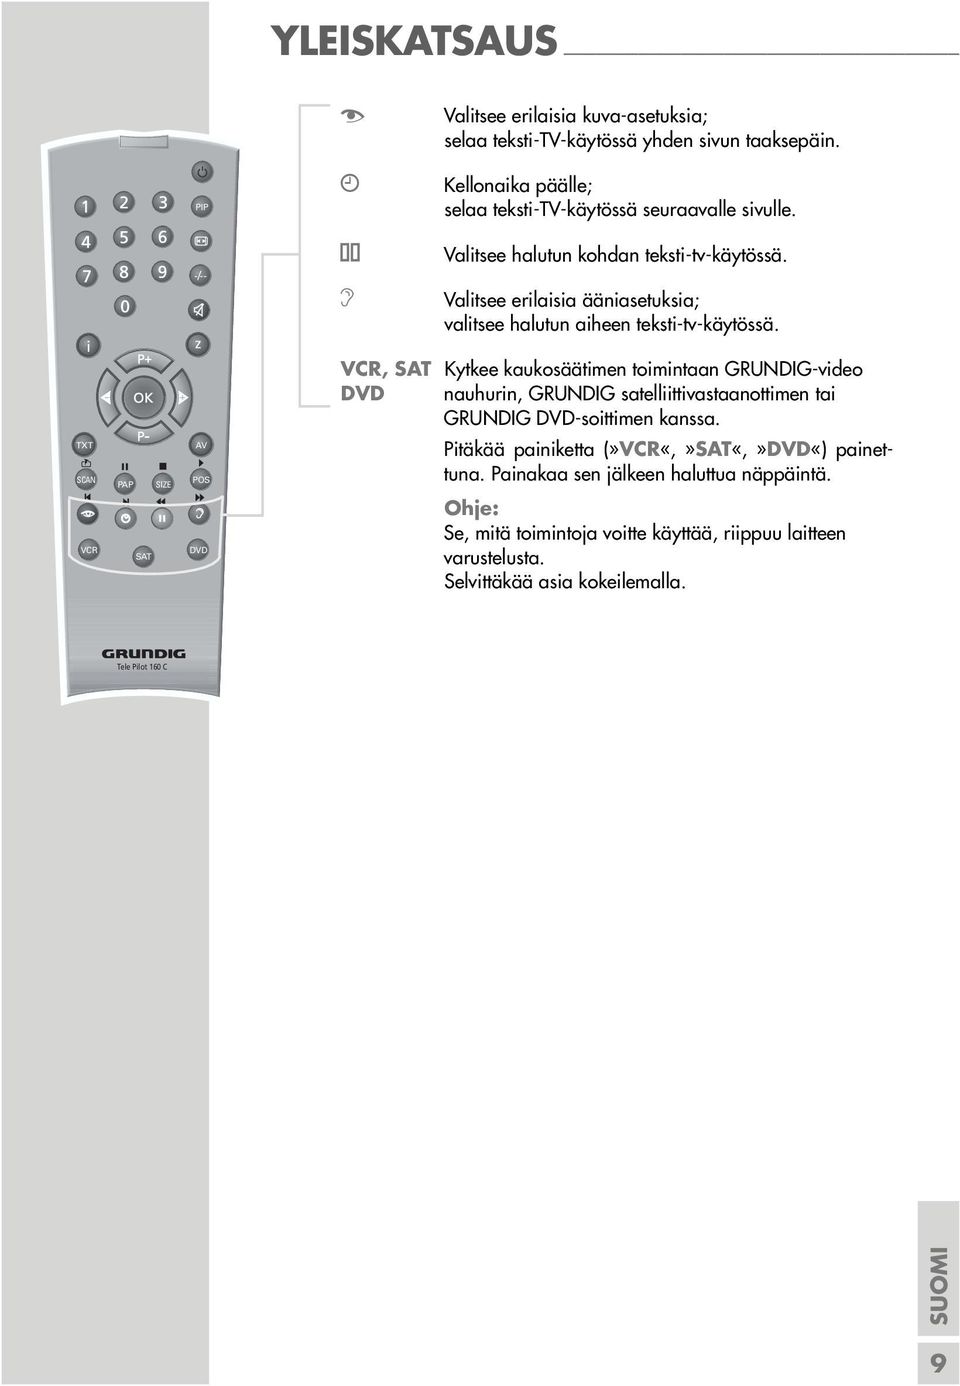 VCR, SAT Kytkee kaukosäätimen toimintaan GRUNDIG-video DVD nauhurin, GRUNDIG satelliittivastaanottimen tai GRUNDIG DVD-soittimen kanssa.